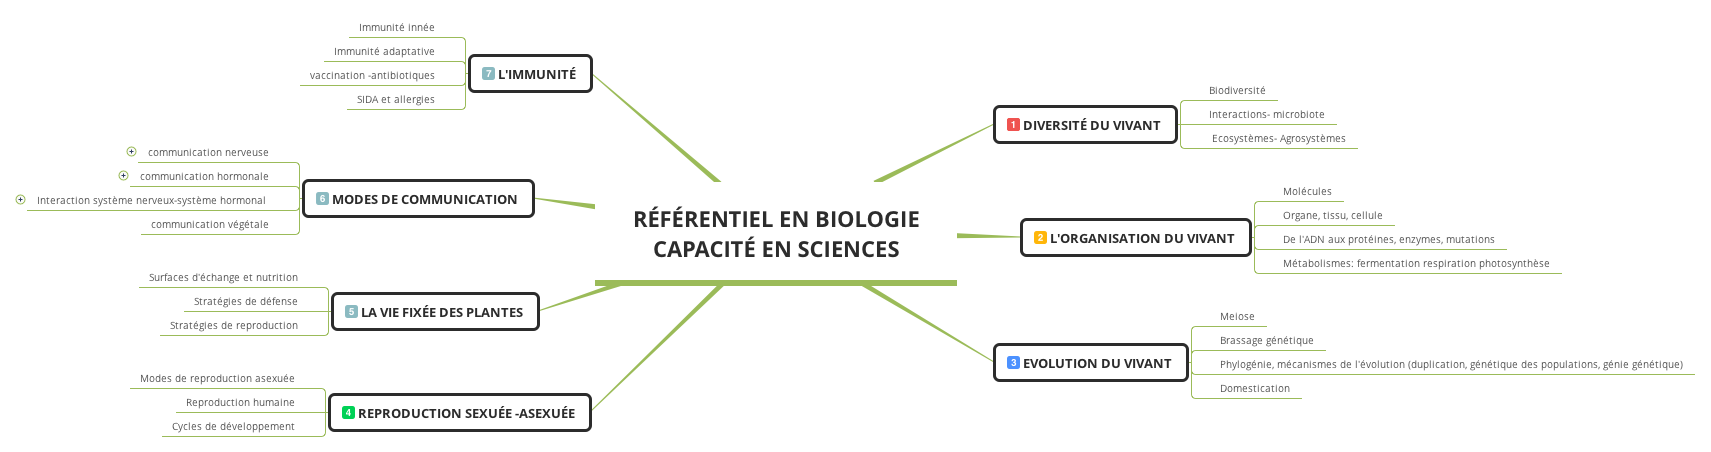 Référentiel de biologie avec les 7 thématiques principales identifiées pour l'entrée en L1 à partir des programmes de SV du lycée